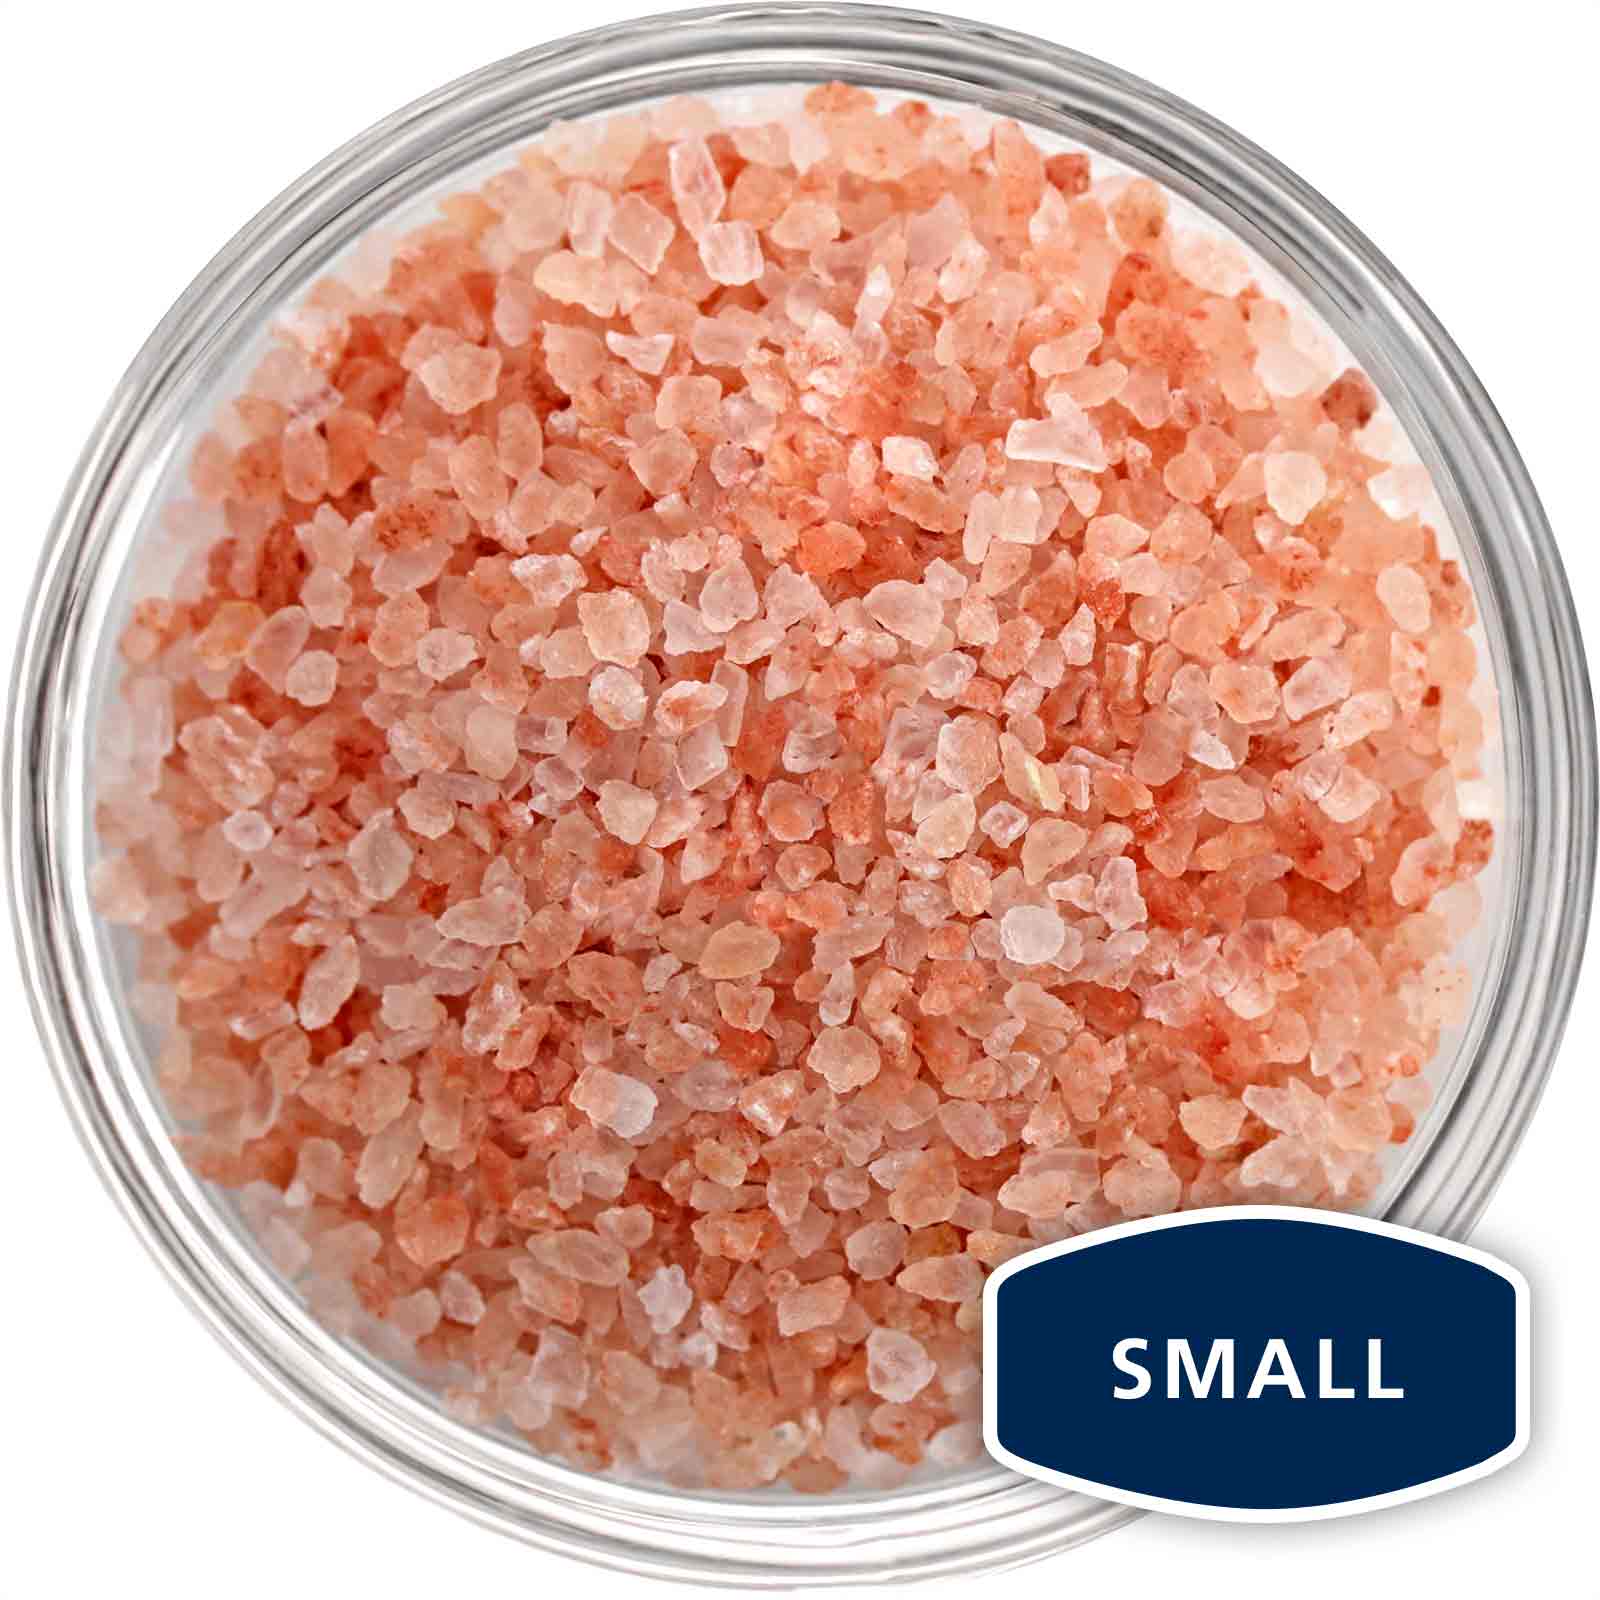 Bowl of small grain Himalayan pink salt